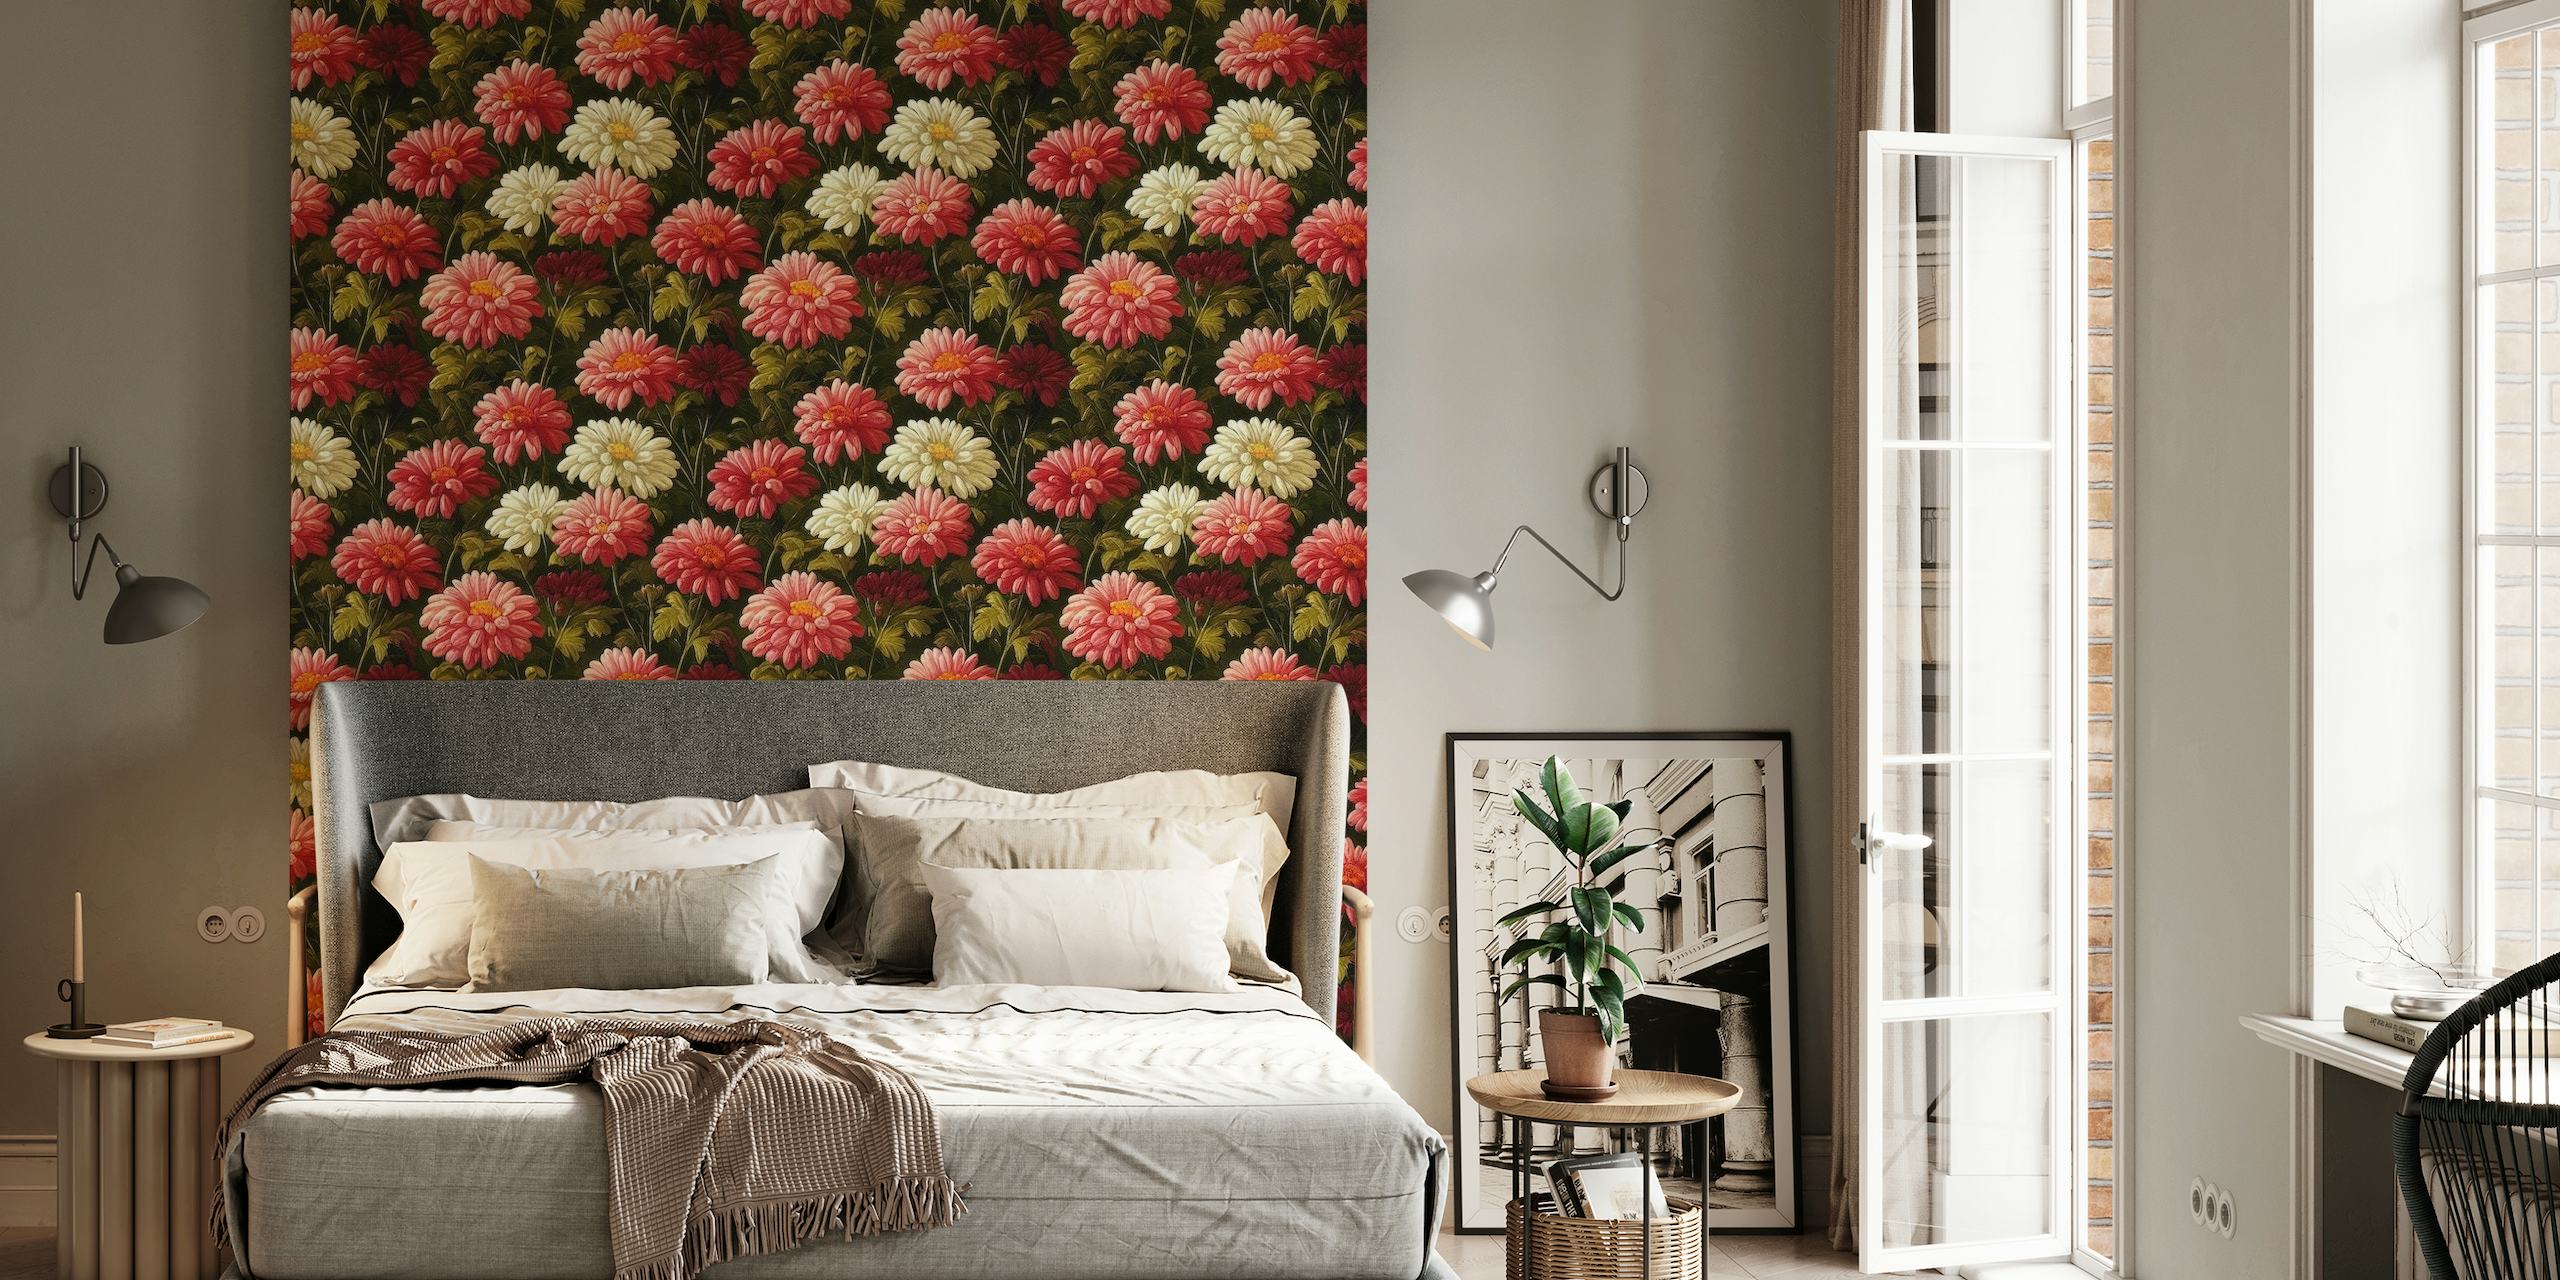 Fading Flowers wallpaper